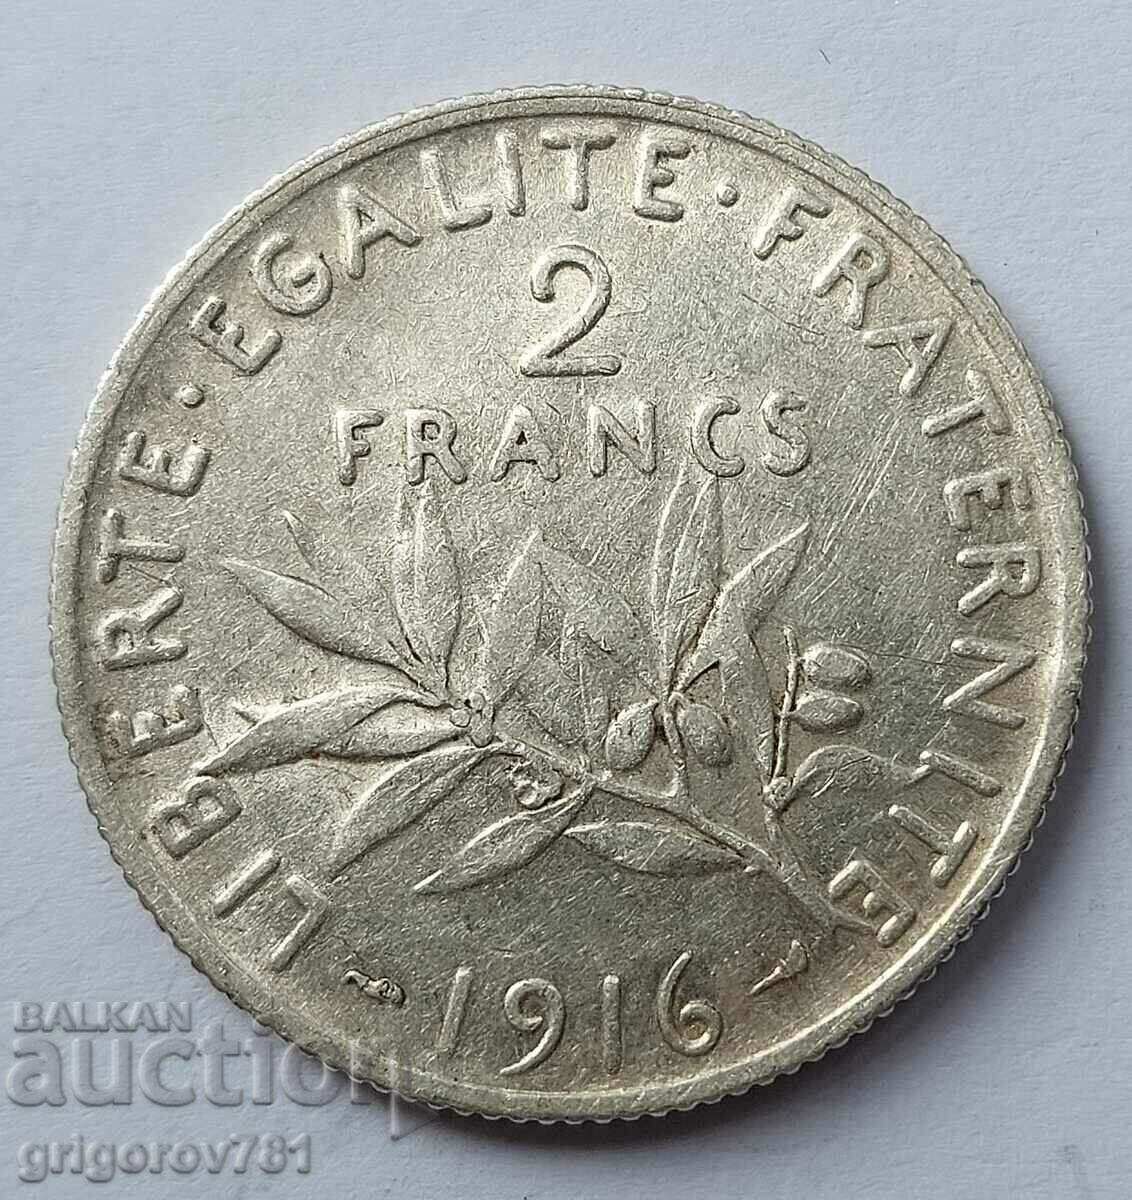 Ασημένιο 2 φράγκα Γαλλία 1916 - ασημένιο νόμισμα №9